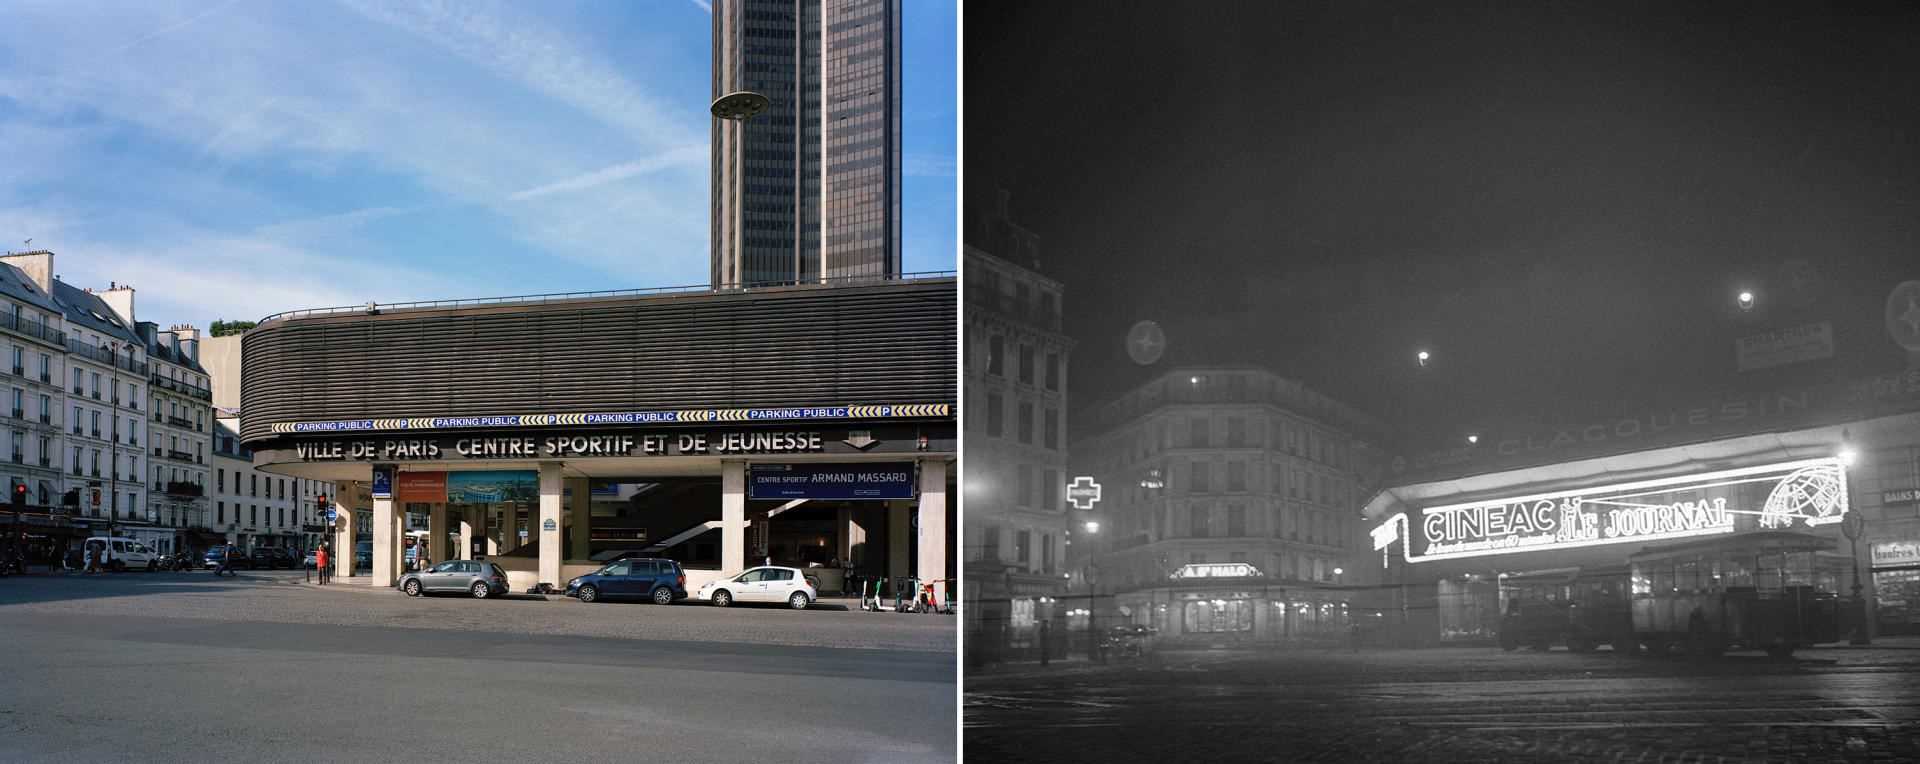 The former Cinéac-Montparnasse cinemas (Paris 14th arrondissement), closed in 1966.